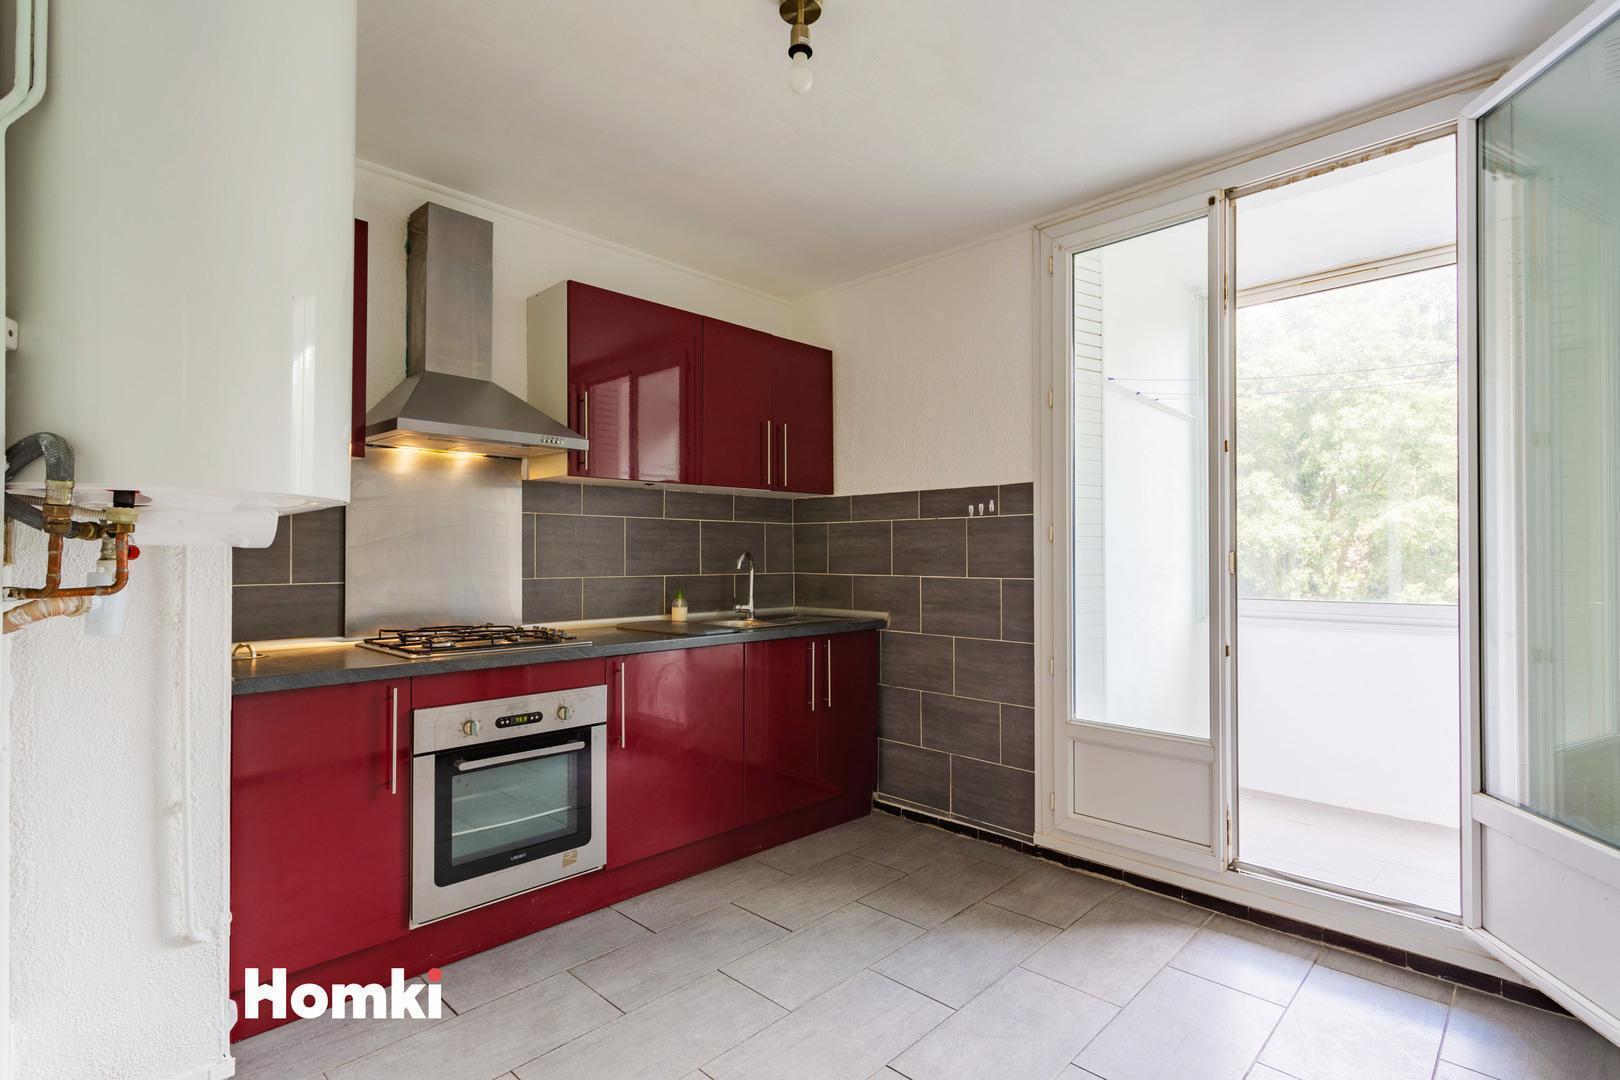 Homki - Vente Appartement  de 63.0 m² à Nîmes 30900